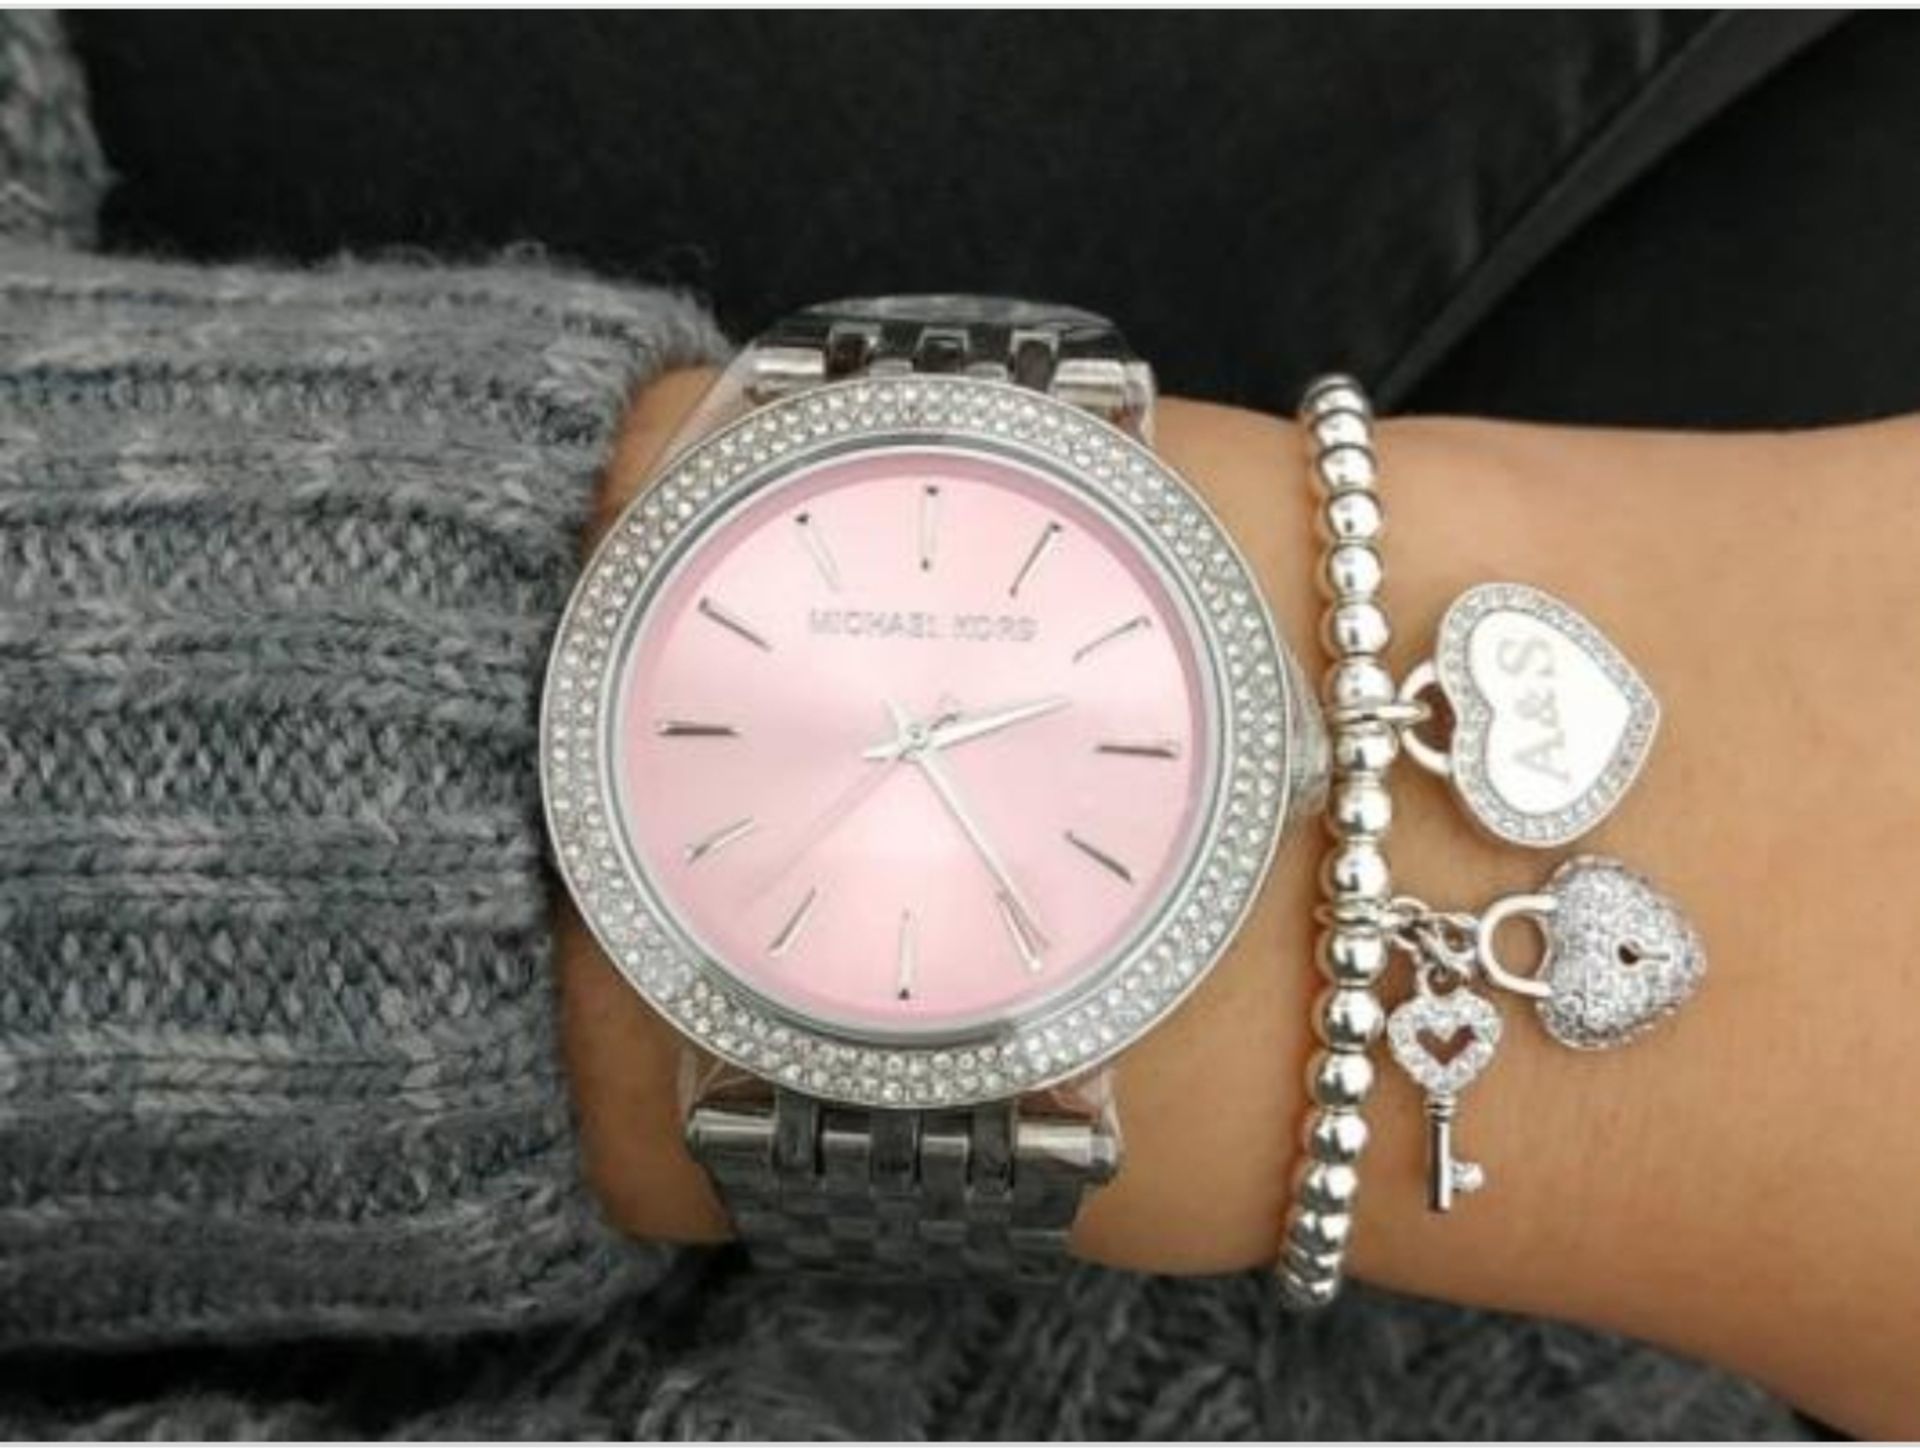 Michael Kors MK3352 Darci Pink & Silver Stainless Steel Ladies Watch - Image 3 of 8